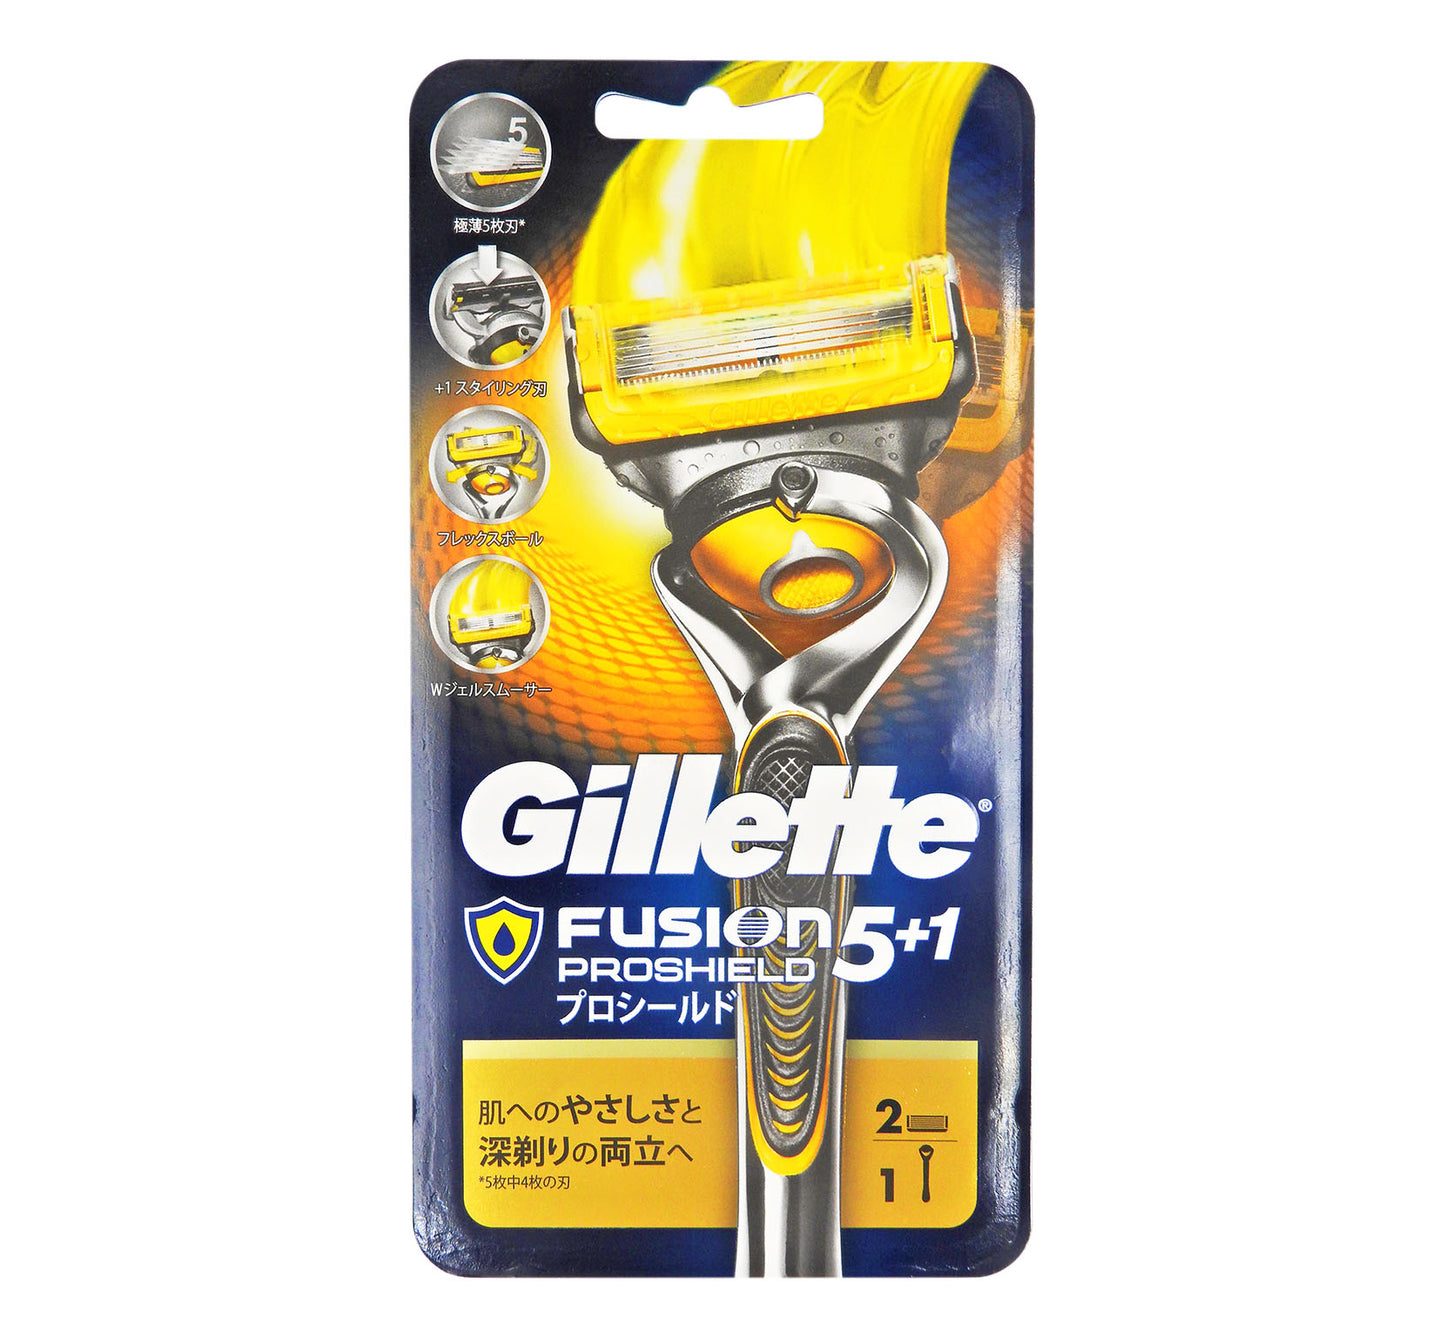 吉列 - Gillette Fusion 5+1 潤滑系列 (內含1刀架 1刀頭) #31115